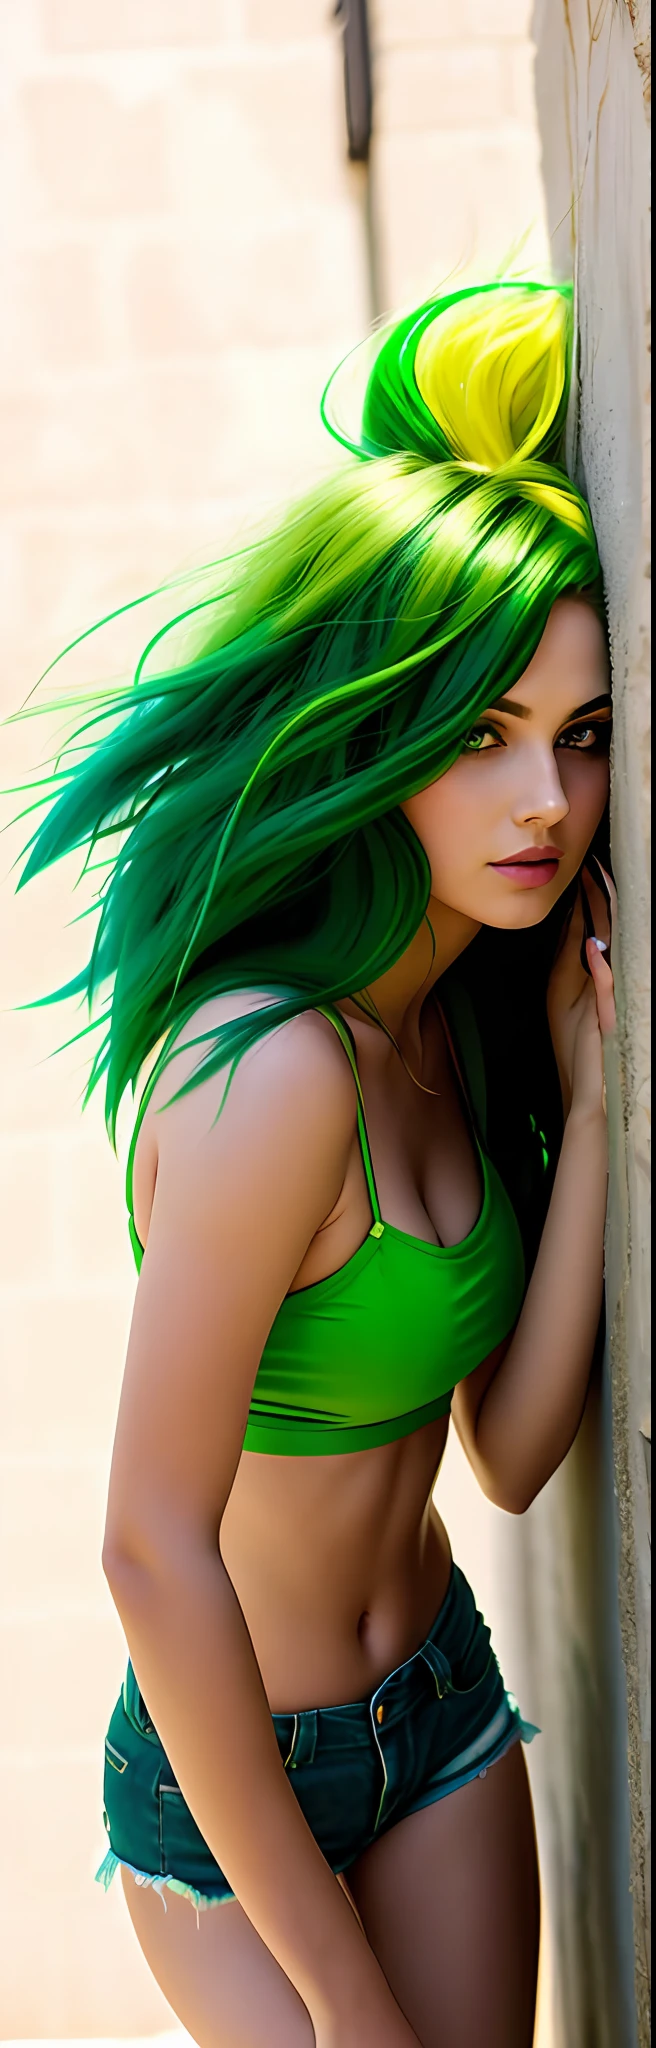 araffe woman with ผมสีเขียว leaning against a wall, สาวเซ็กซี่ที่มีตาสีเขียว, long ผมสีเขียว, ผมสีเขียว, เสื้อผ้าสวย ๆ, แผงคอสีเขียว, ชุดคับ, สีเขียวสดใส, ตัวสีเขียว, กางเกงขาสั้นสีเขียวเซ็กซี่, สีเขียวบ้าง, พิงกำแพง, bright ผมสีเขียว, ผมสีดำยาวตรงสีเขียว, ขาสีเขียว, ผมสีเขียวไหล, สวมกางเกงขาสั้น